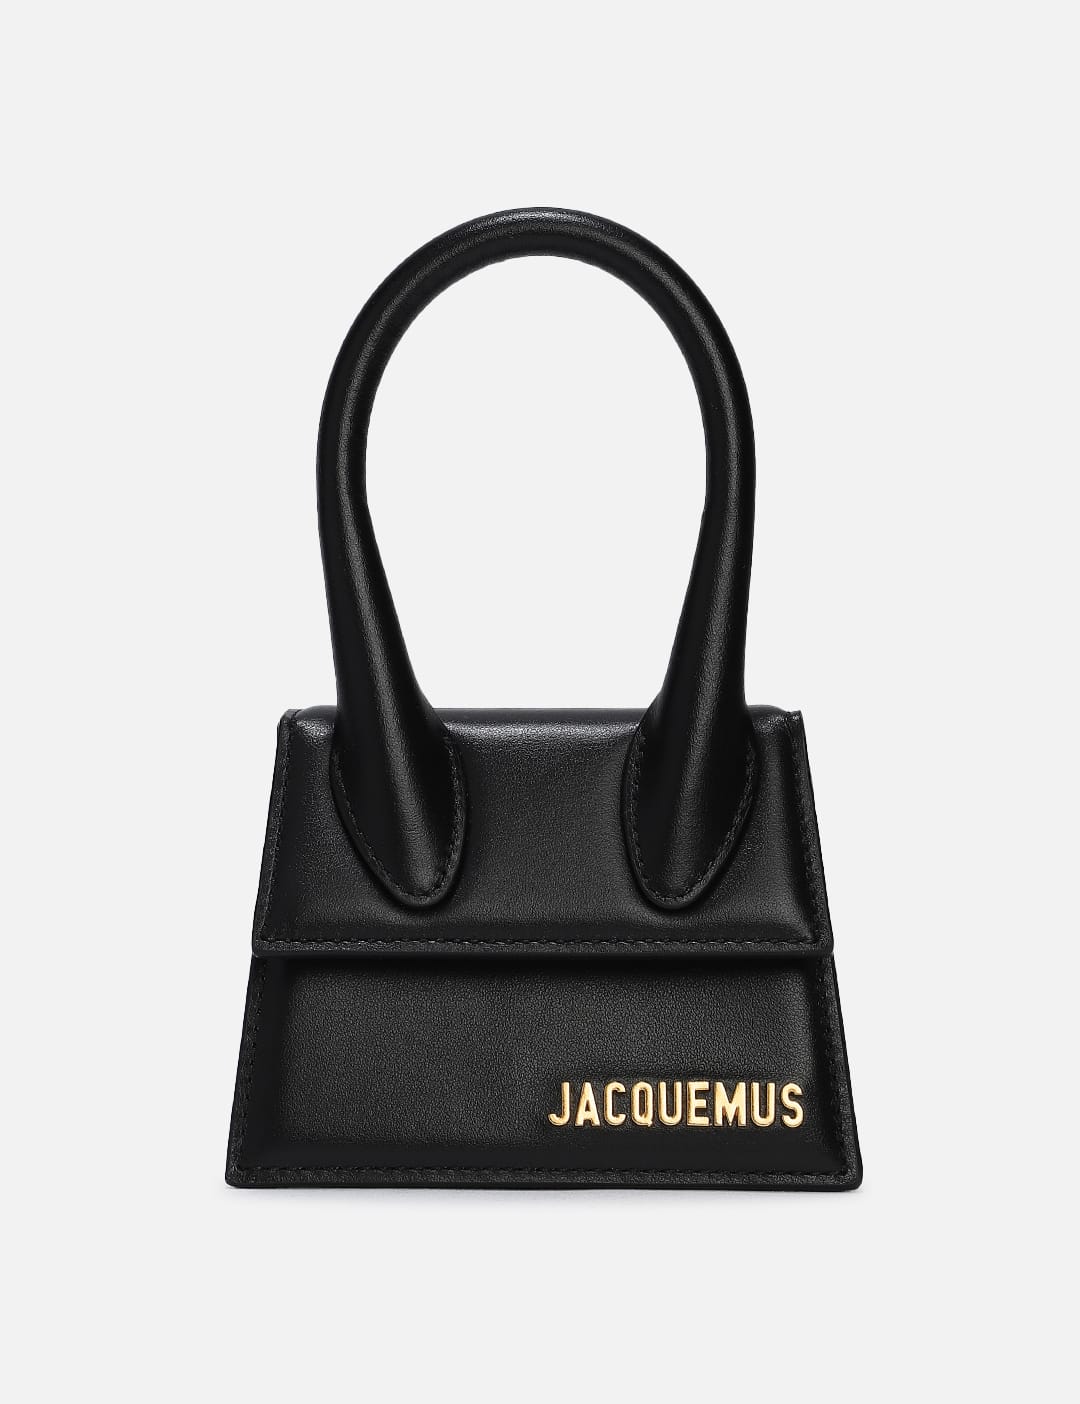 자크뮈스 Jacquemus Le Chiquito Mini Handbag